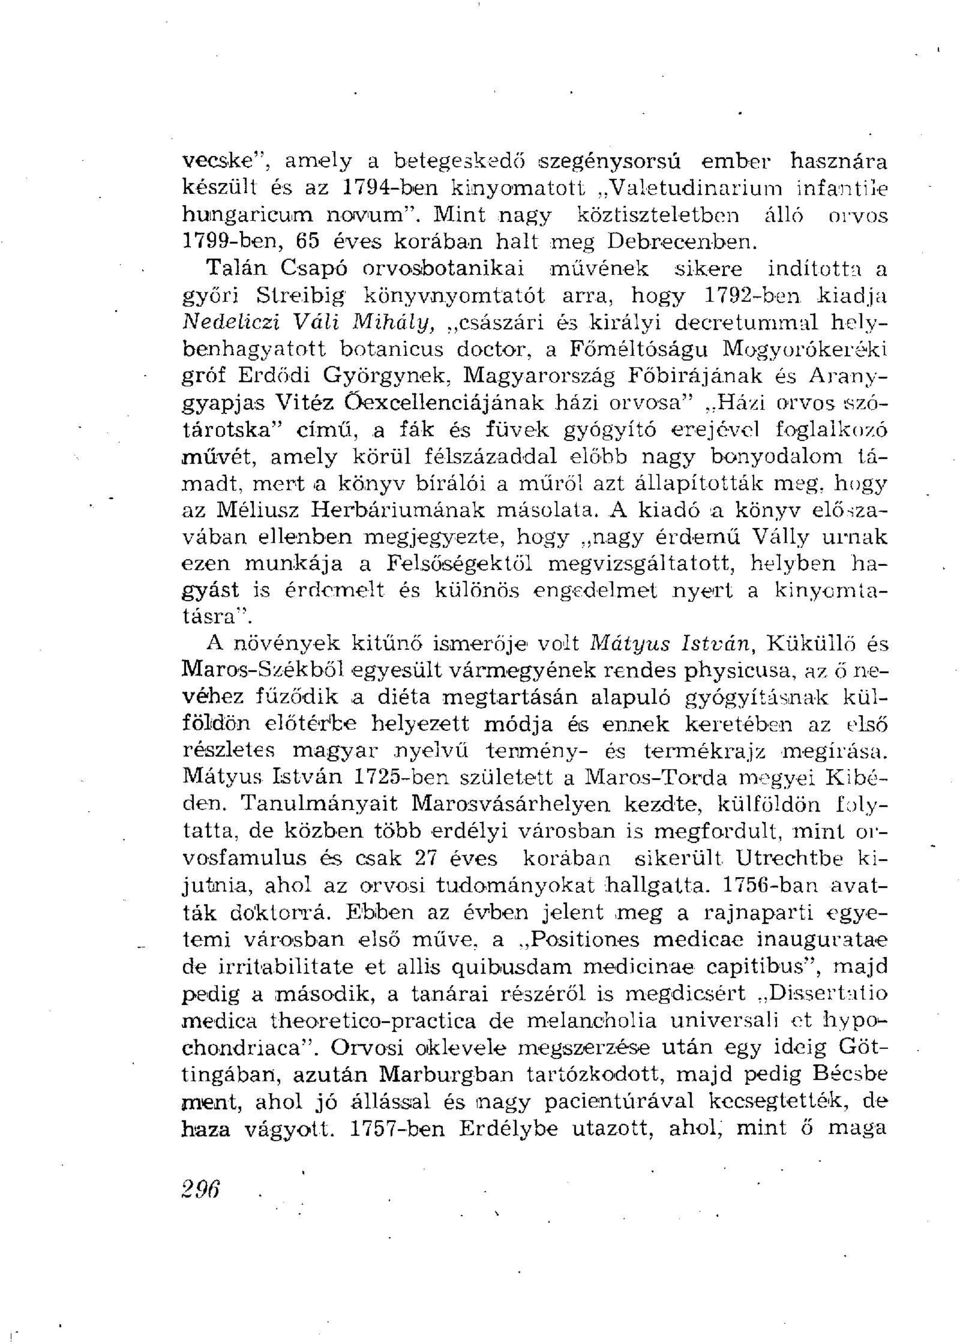 Talán Csapó orvosbotanikai művének sikere indította a győri Streibig könyvnyomtatót arra, hogy 1792-ben kiadja Nedeliczi Váli Mihály, császári és királyi decretummal helybenhagyatott botanicus